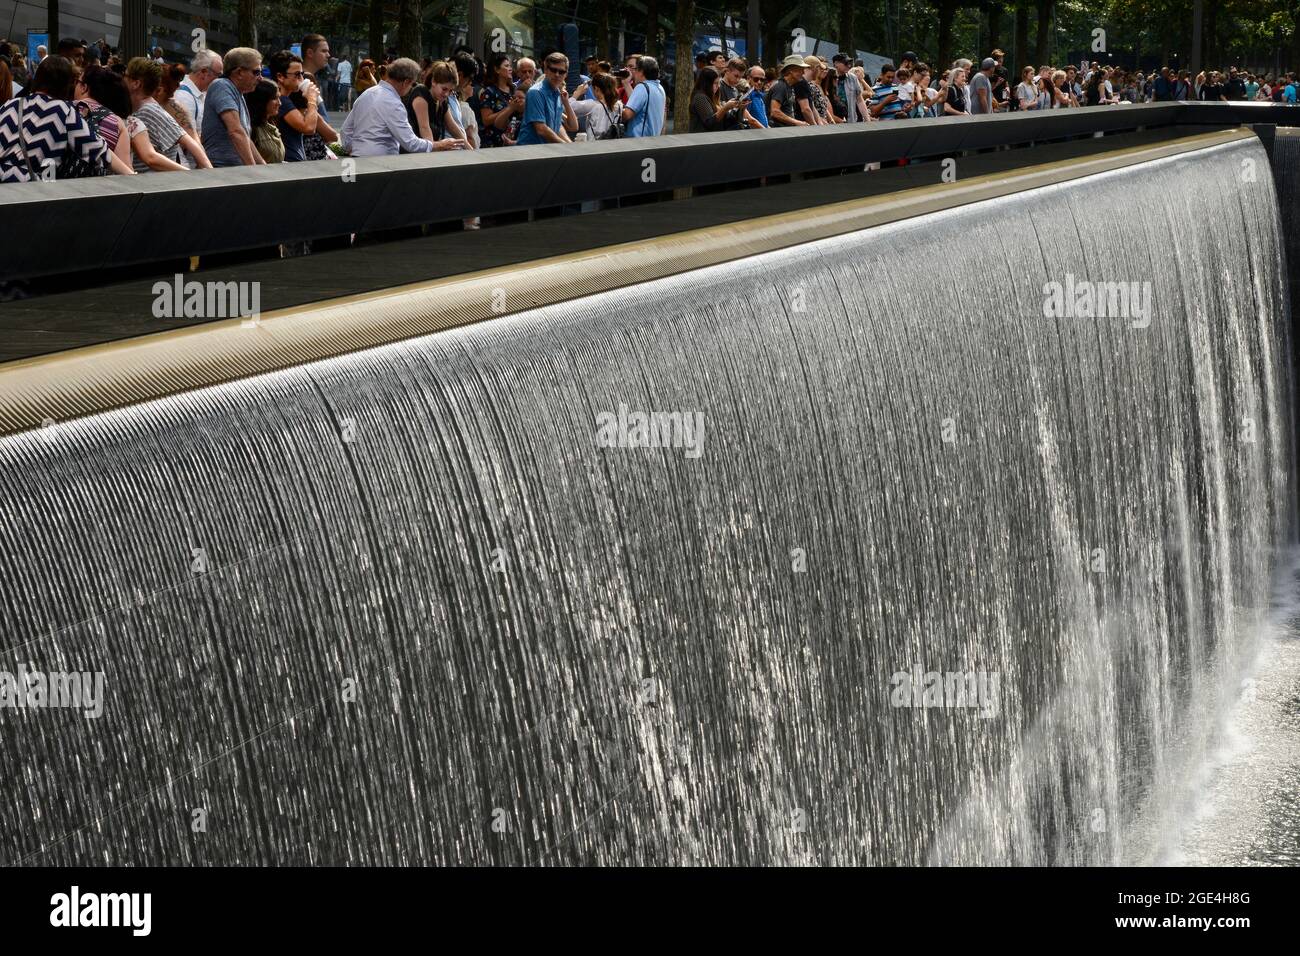 USA, New York City, 9/11 Memorial Ground Zero pour la mémoire des victimes de l'attaque terroriste du 11 septembre 2001 à la tour du centre du commerce mondial, bassin d'eau, piscine réfléchissante, eau coulant, cascade Banque D'Images